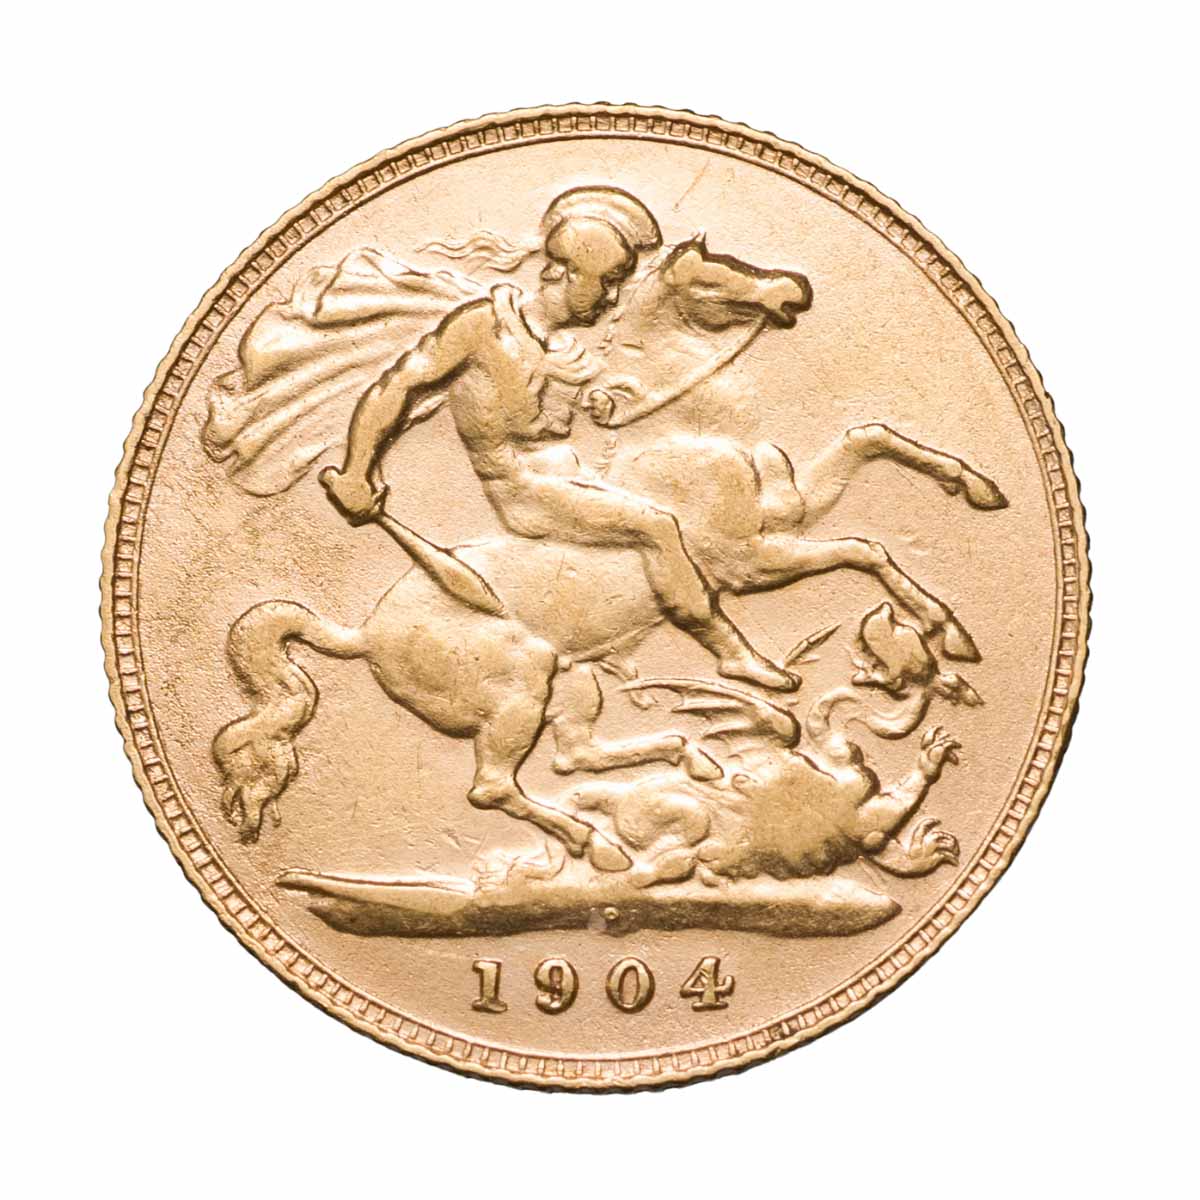 Edward VII 1904P Gold Half Sovereign Very Fine